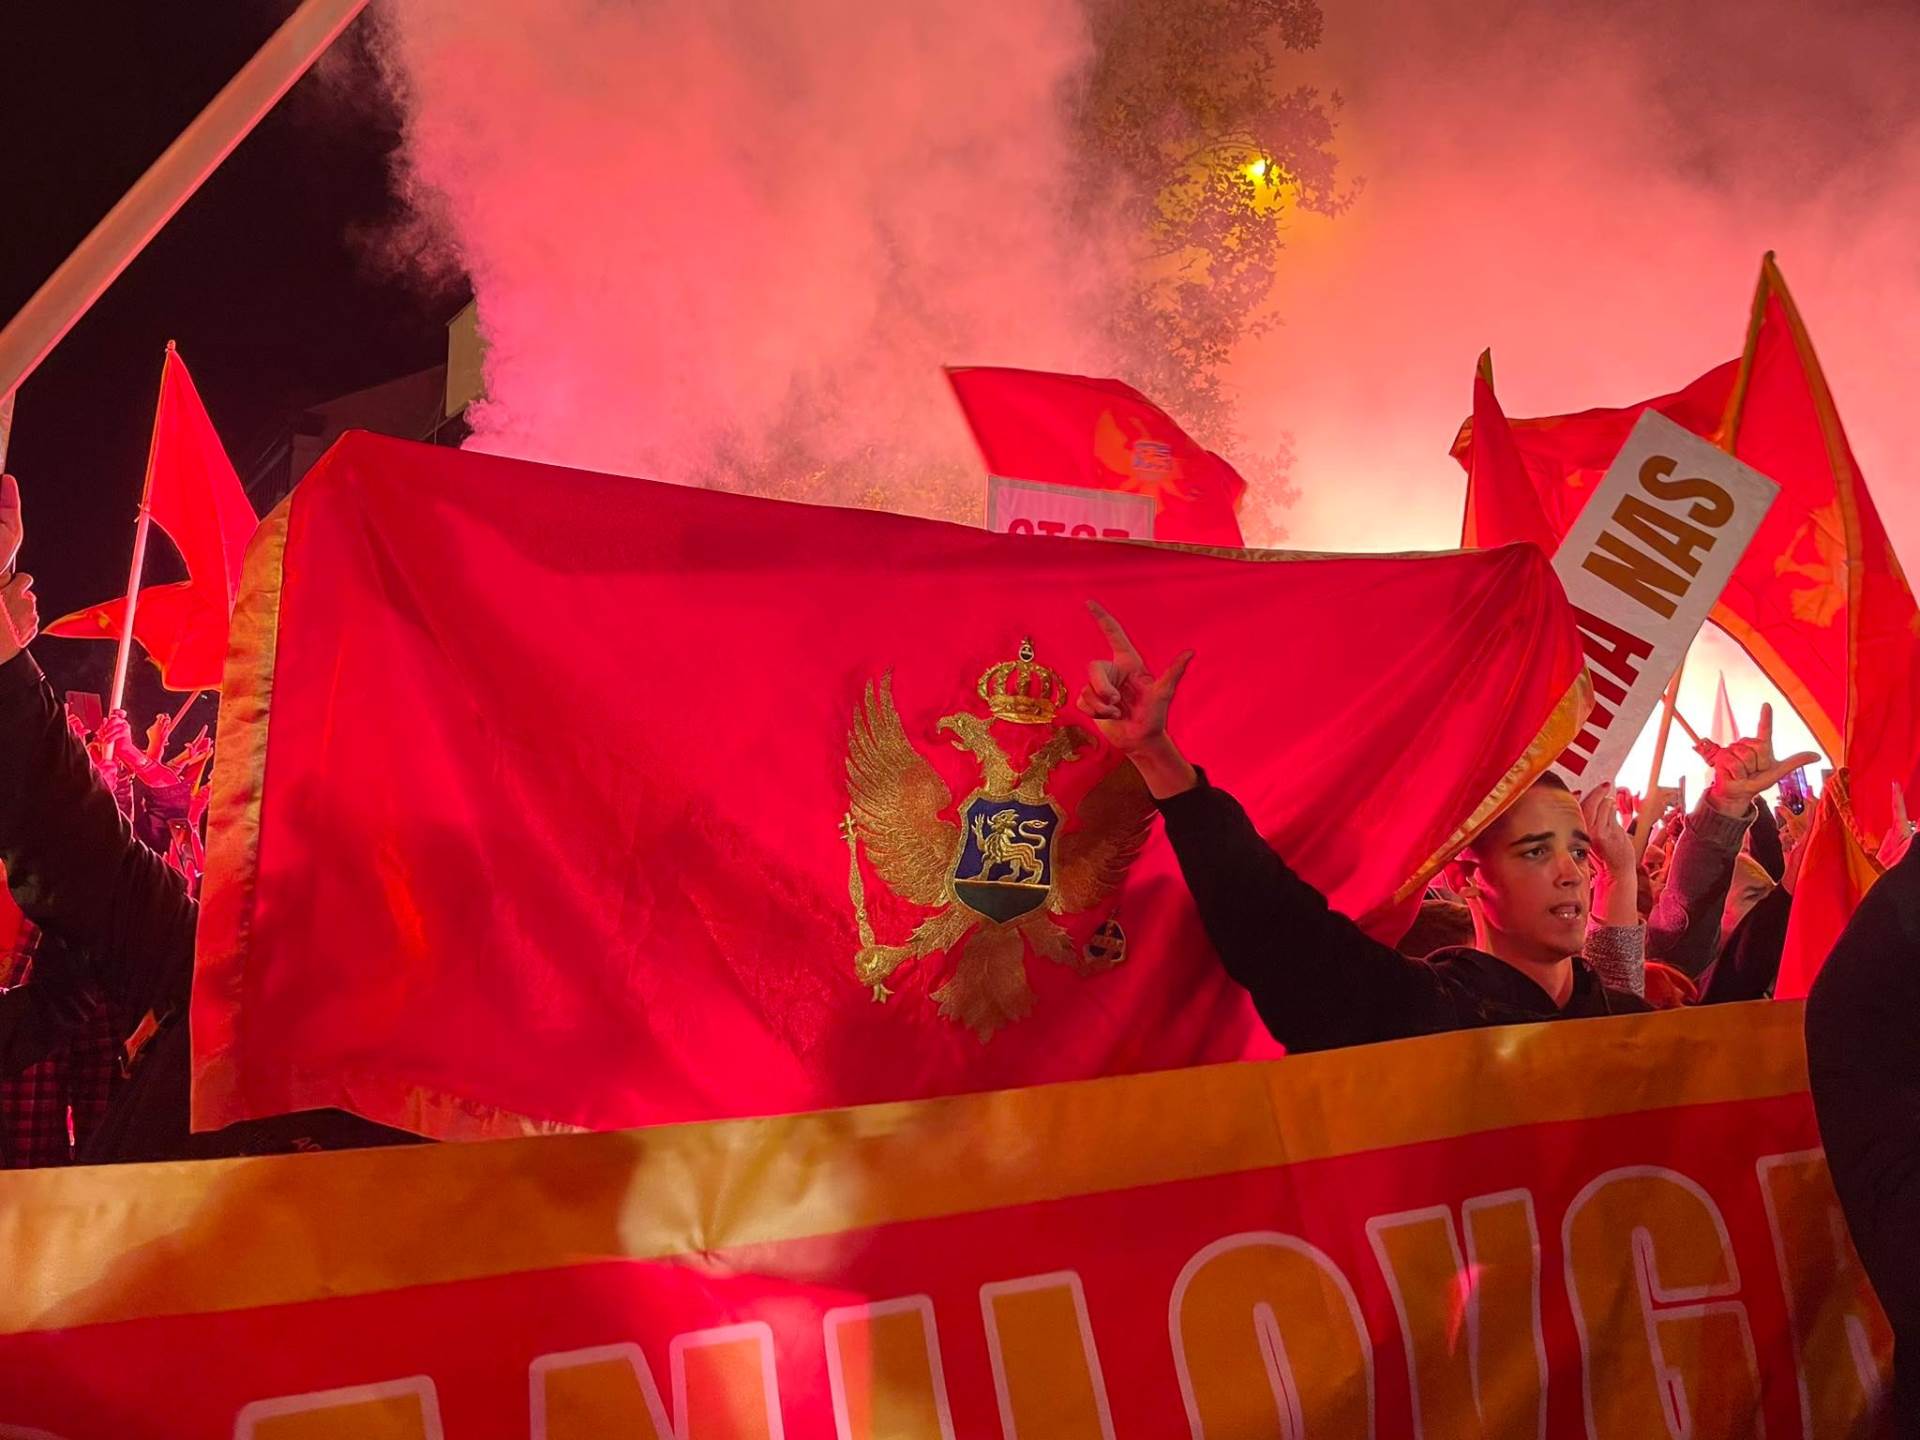  vise hiljada ljudi pjeva crnogorsku himnu ispred skupstine  